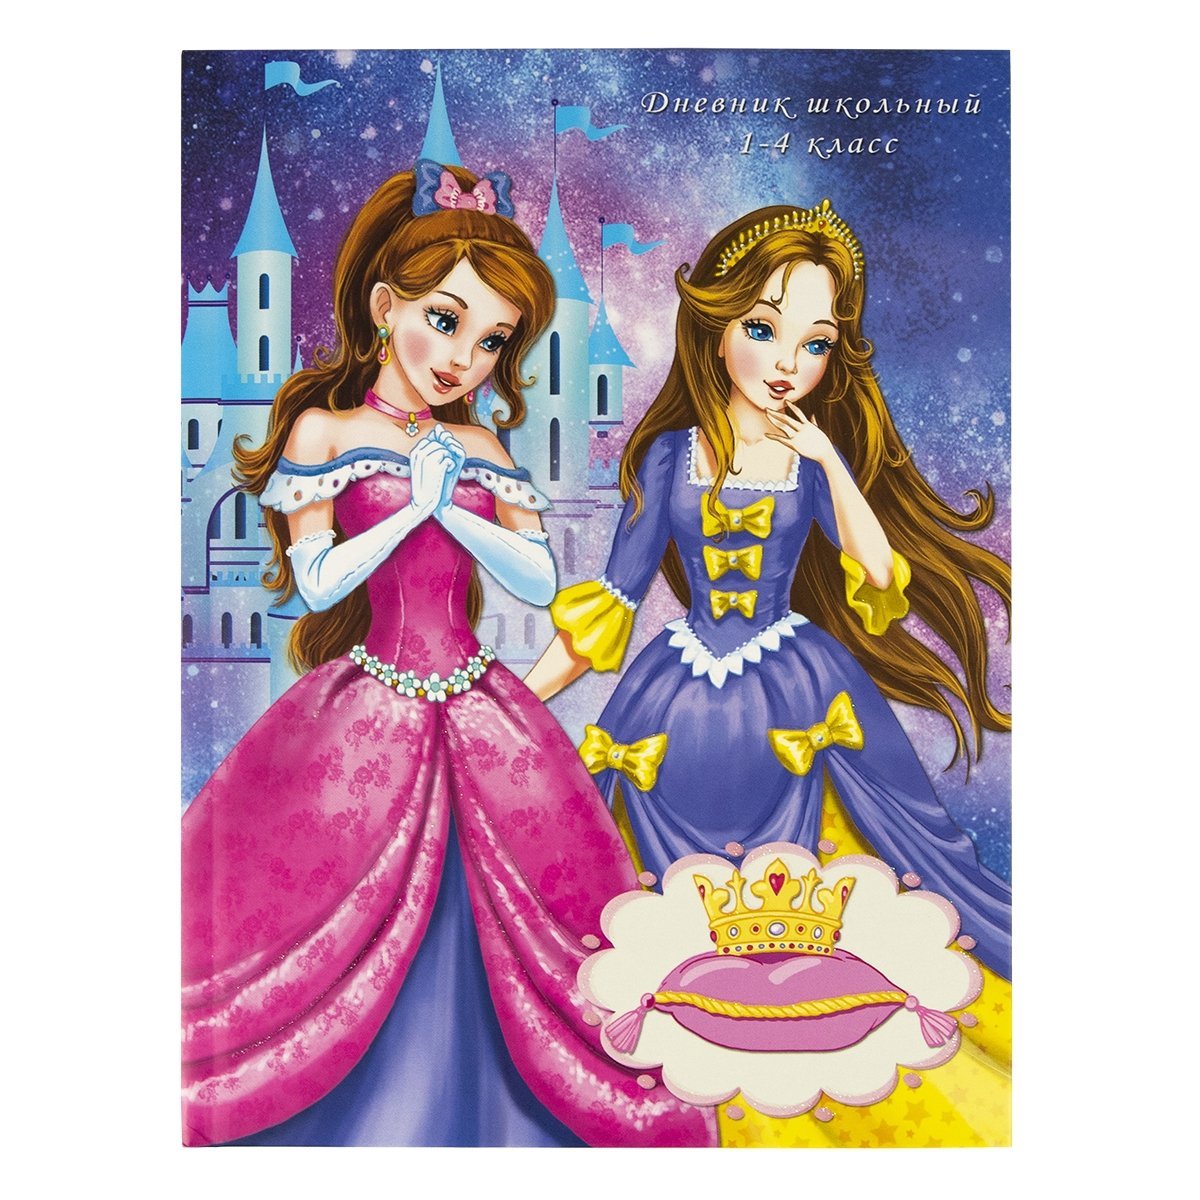 Принцесса 2 читать. Дневники принцессы. Дневник для школы принцесса. Открытка две принцессы. Две принцессы рельеф.